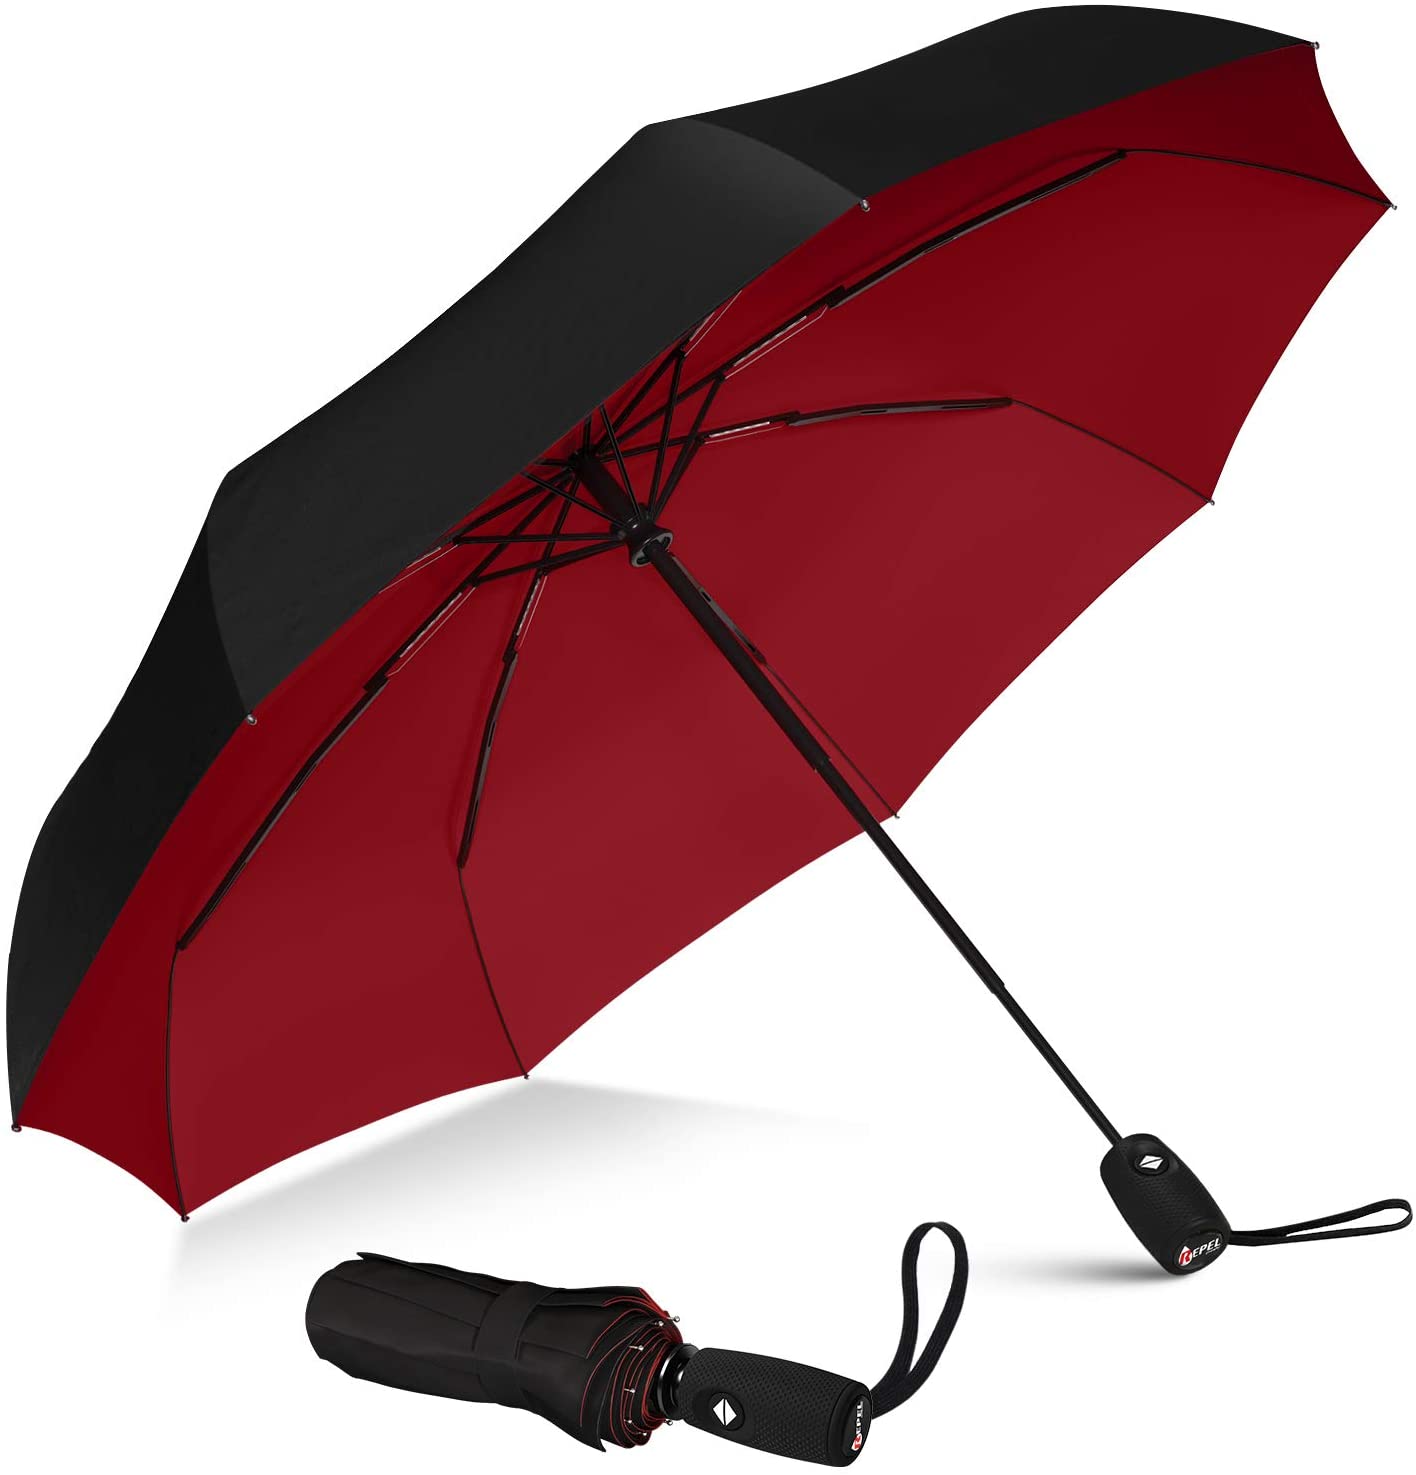 Repel Umbrella Teflon Coated Windproof Travel Umbrella